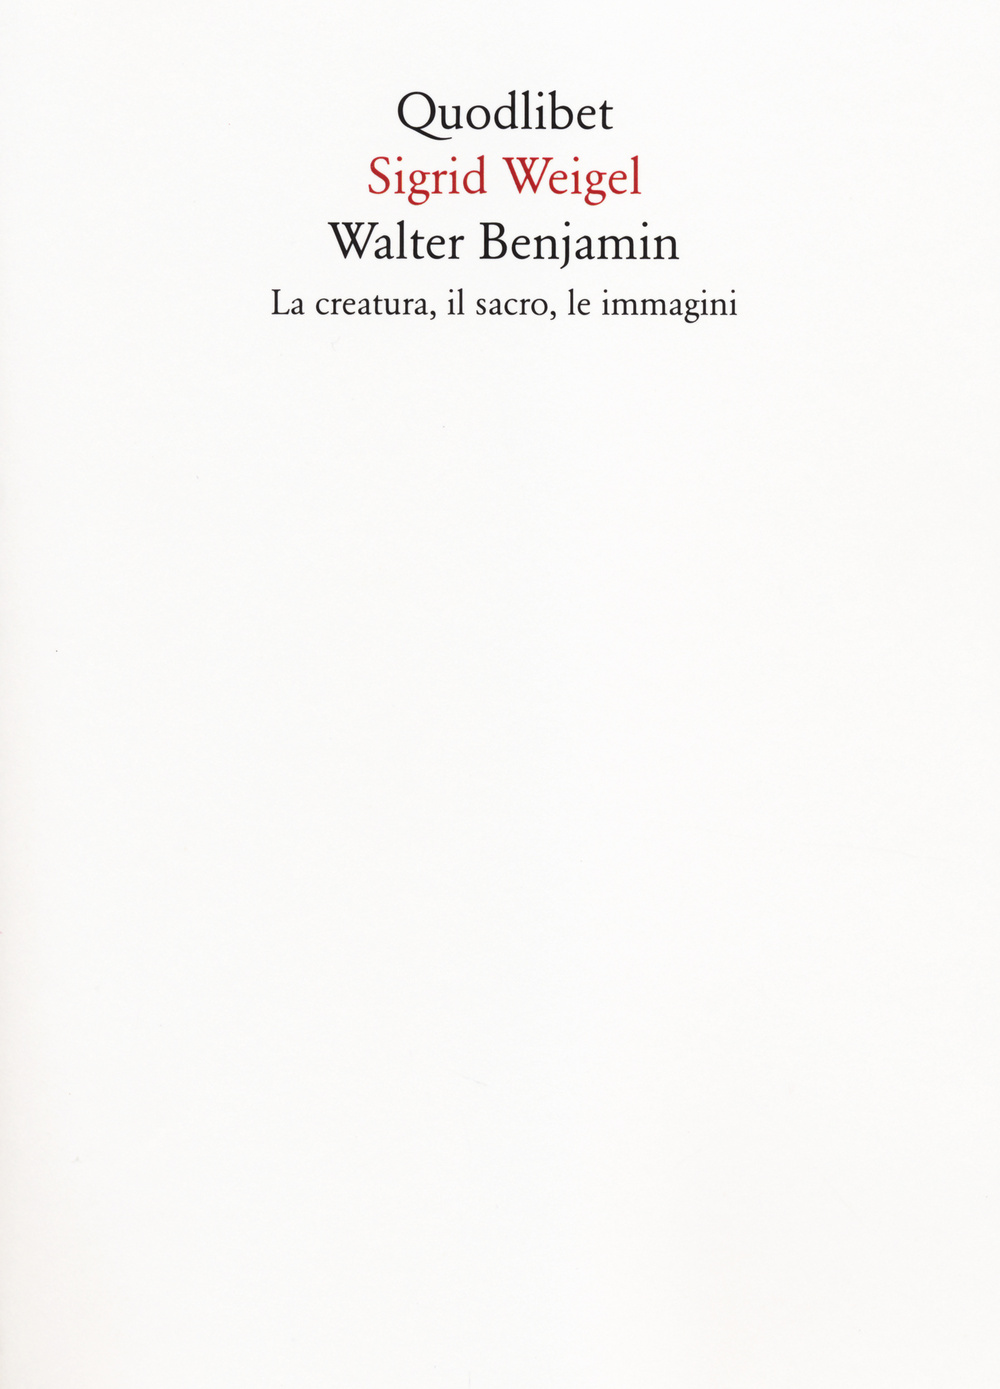 Walter Benjamin. La creatura, il sacro, le immagini